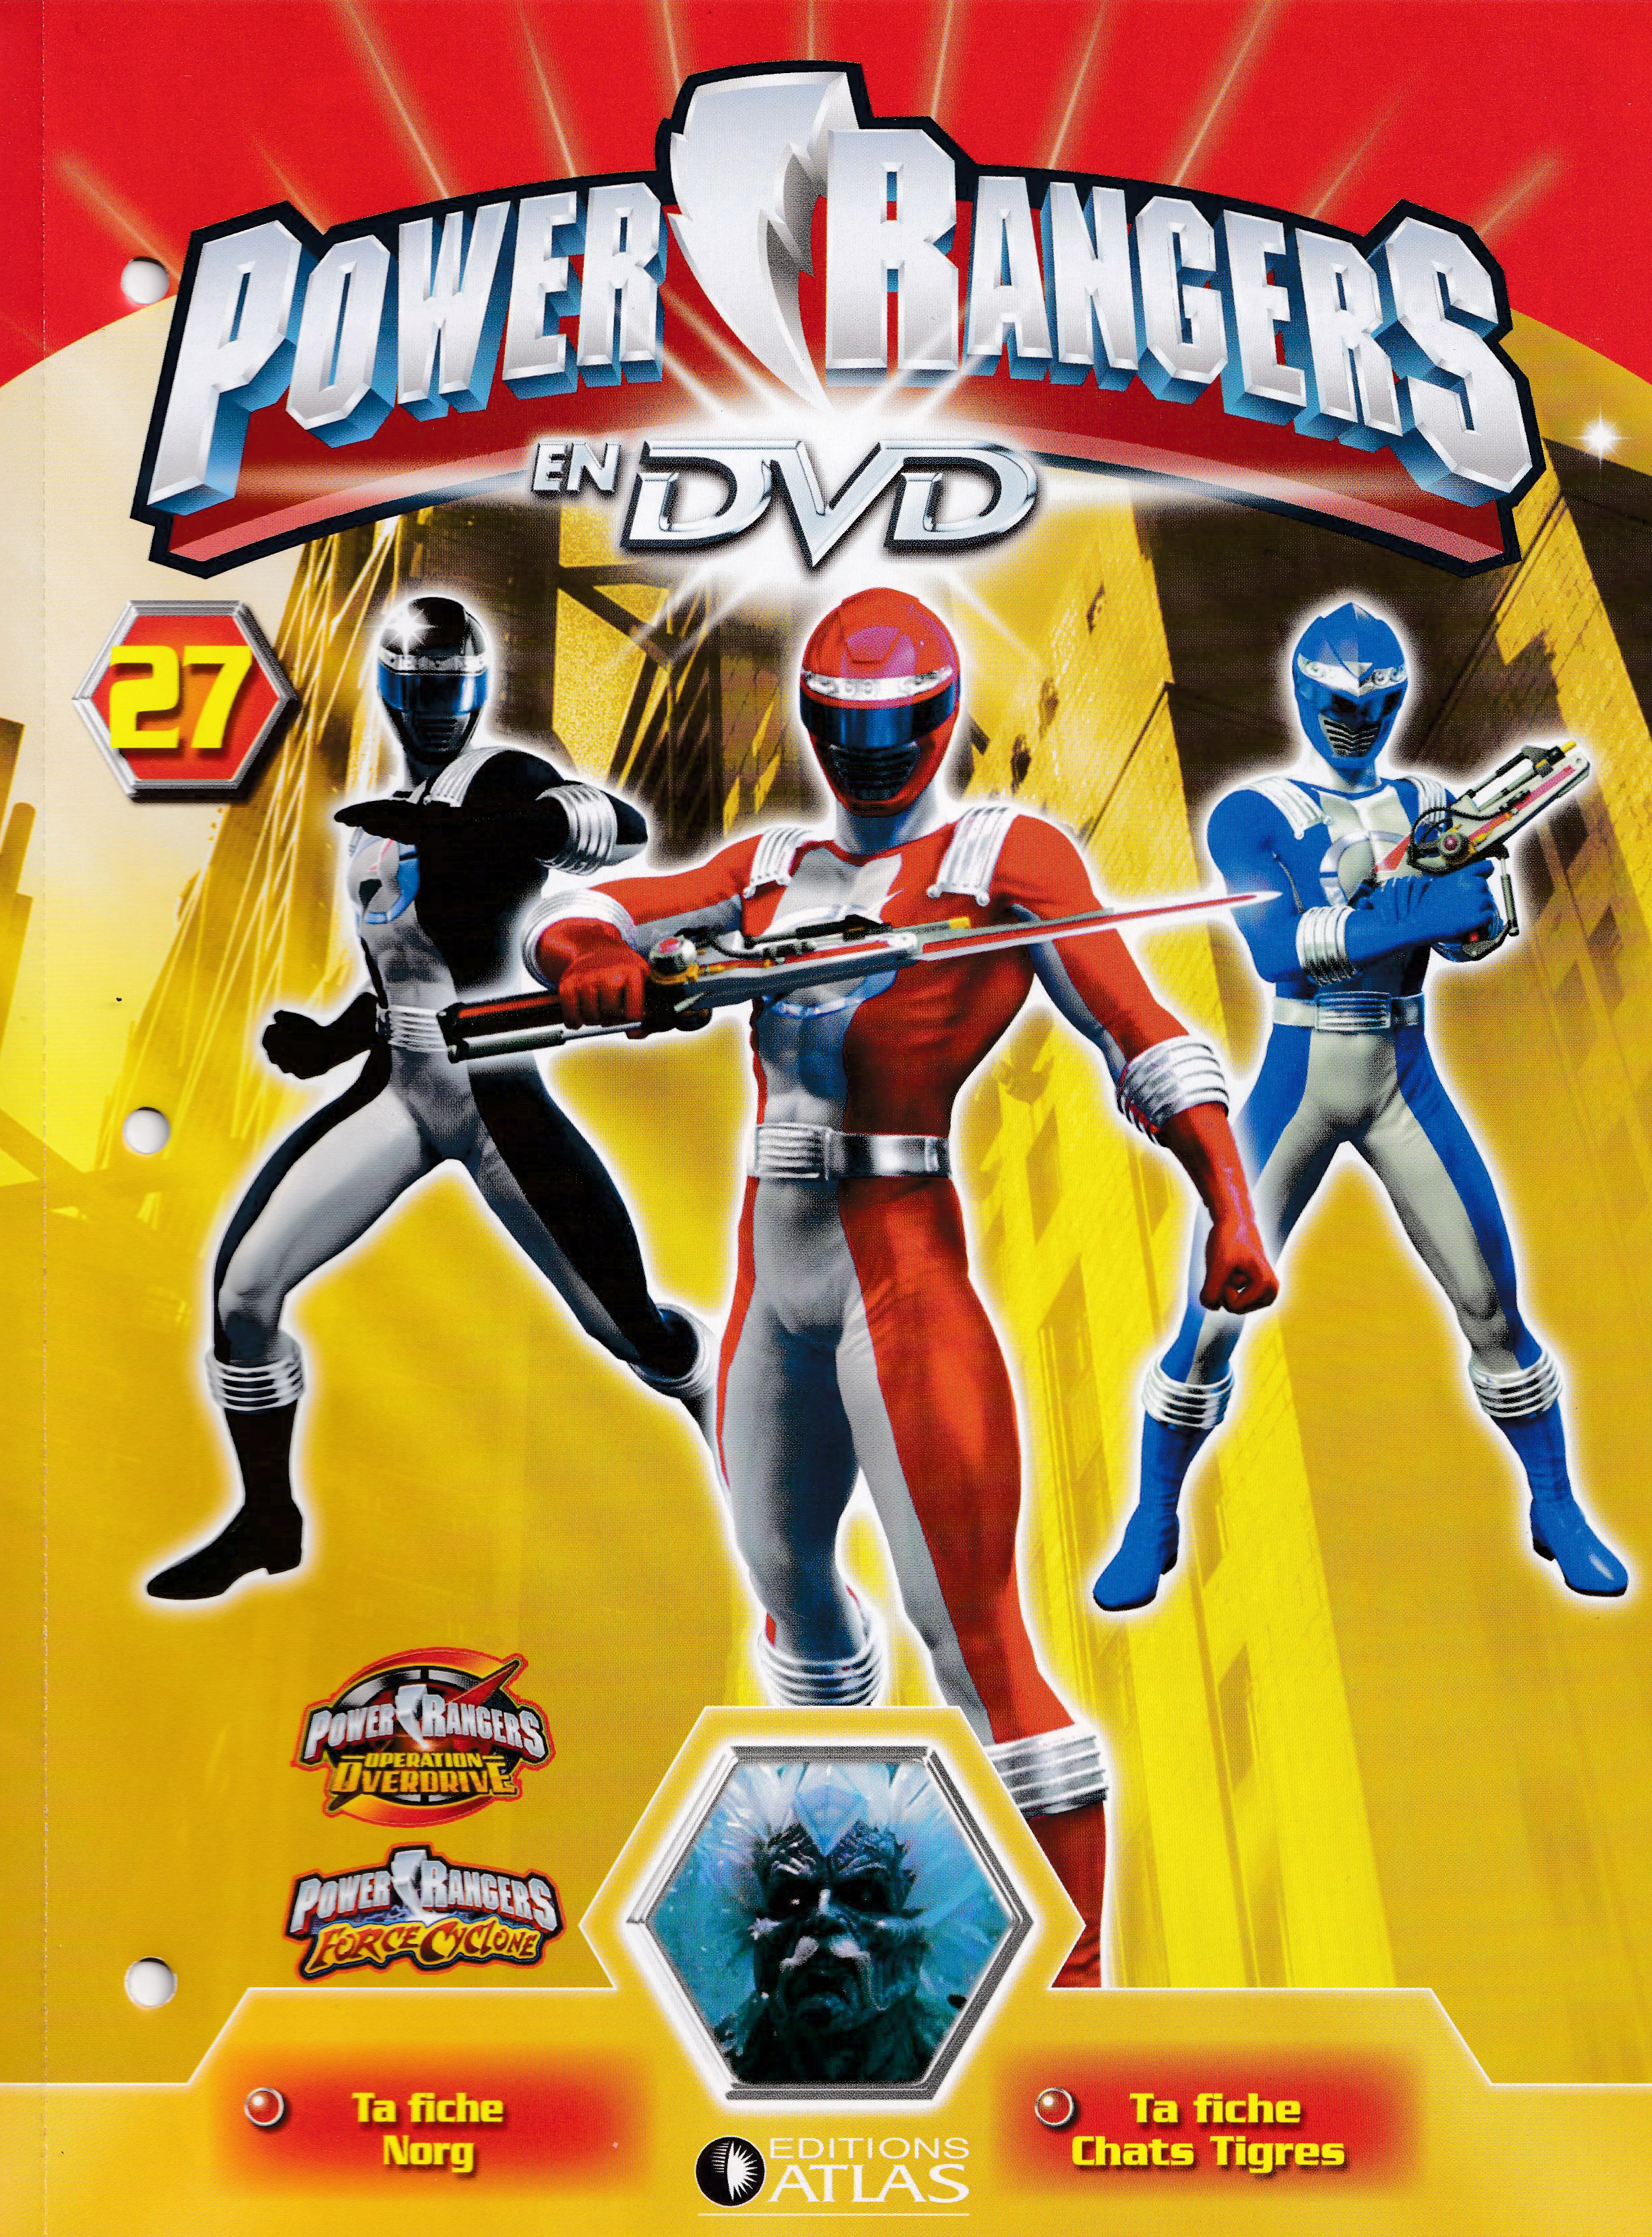 Power Rangers en DVD n°27